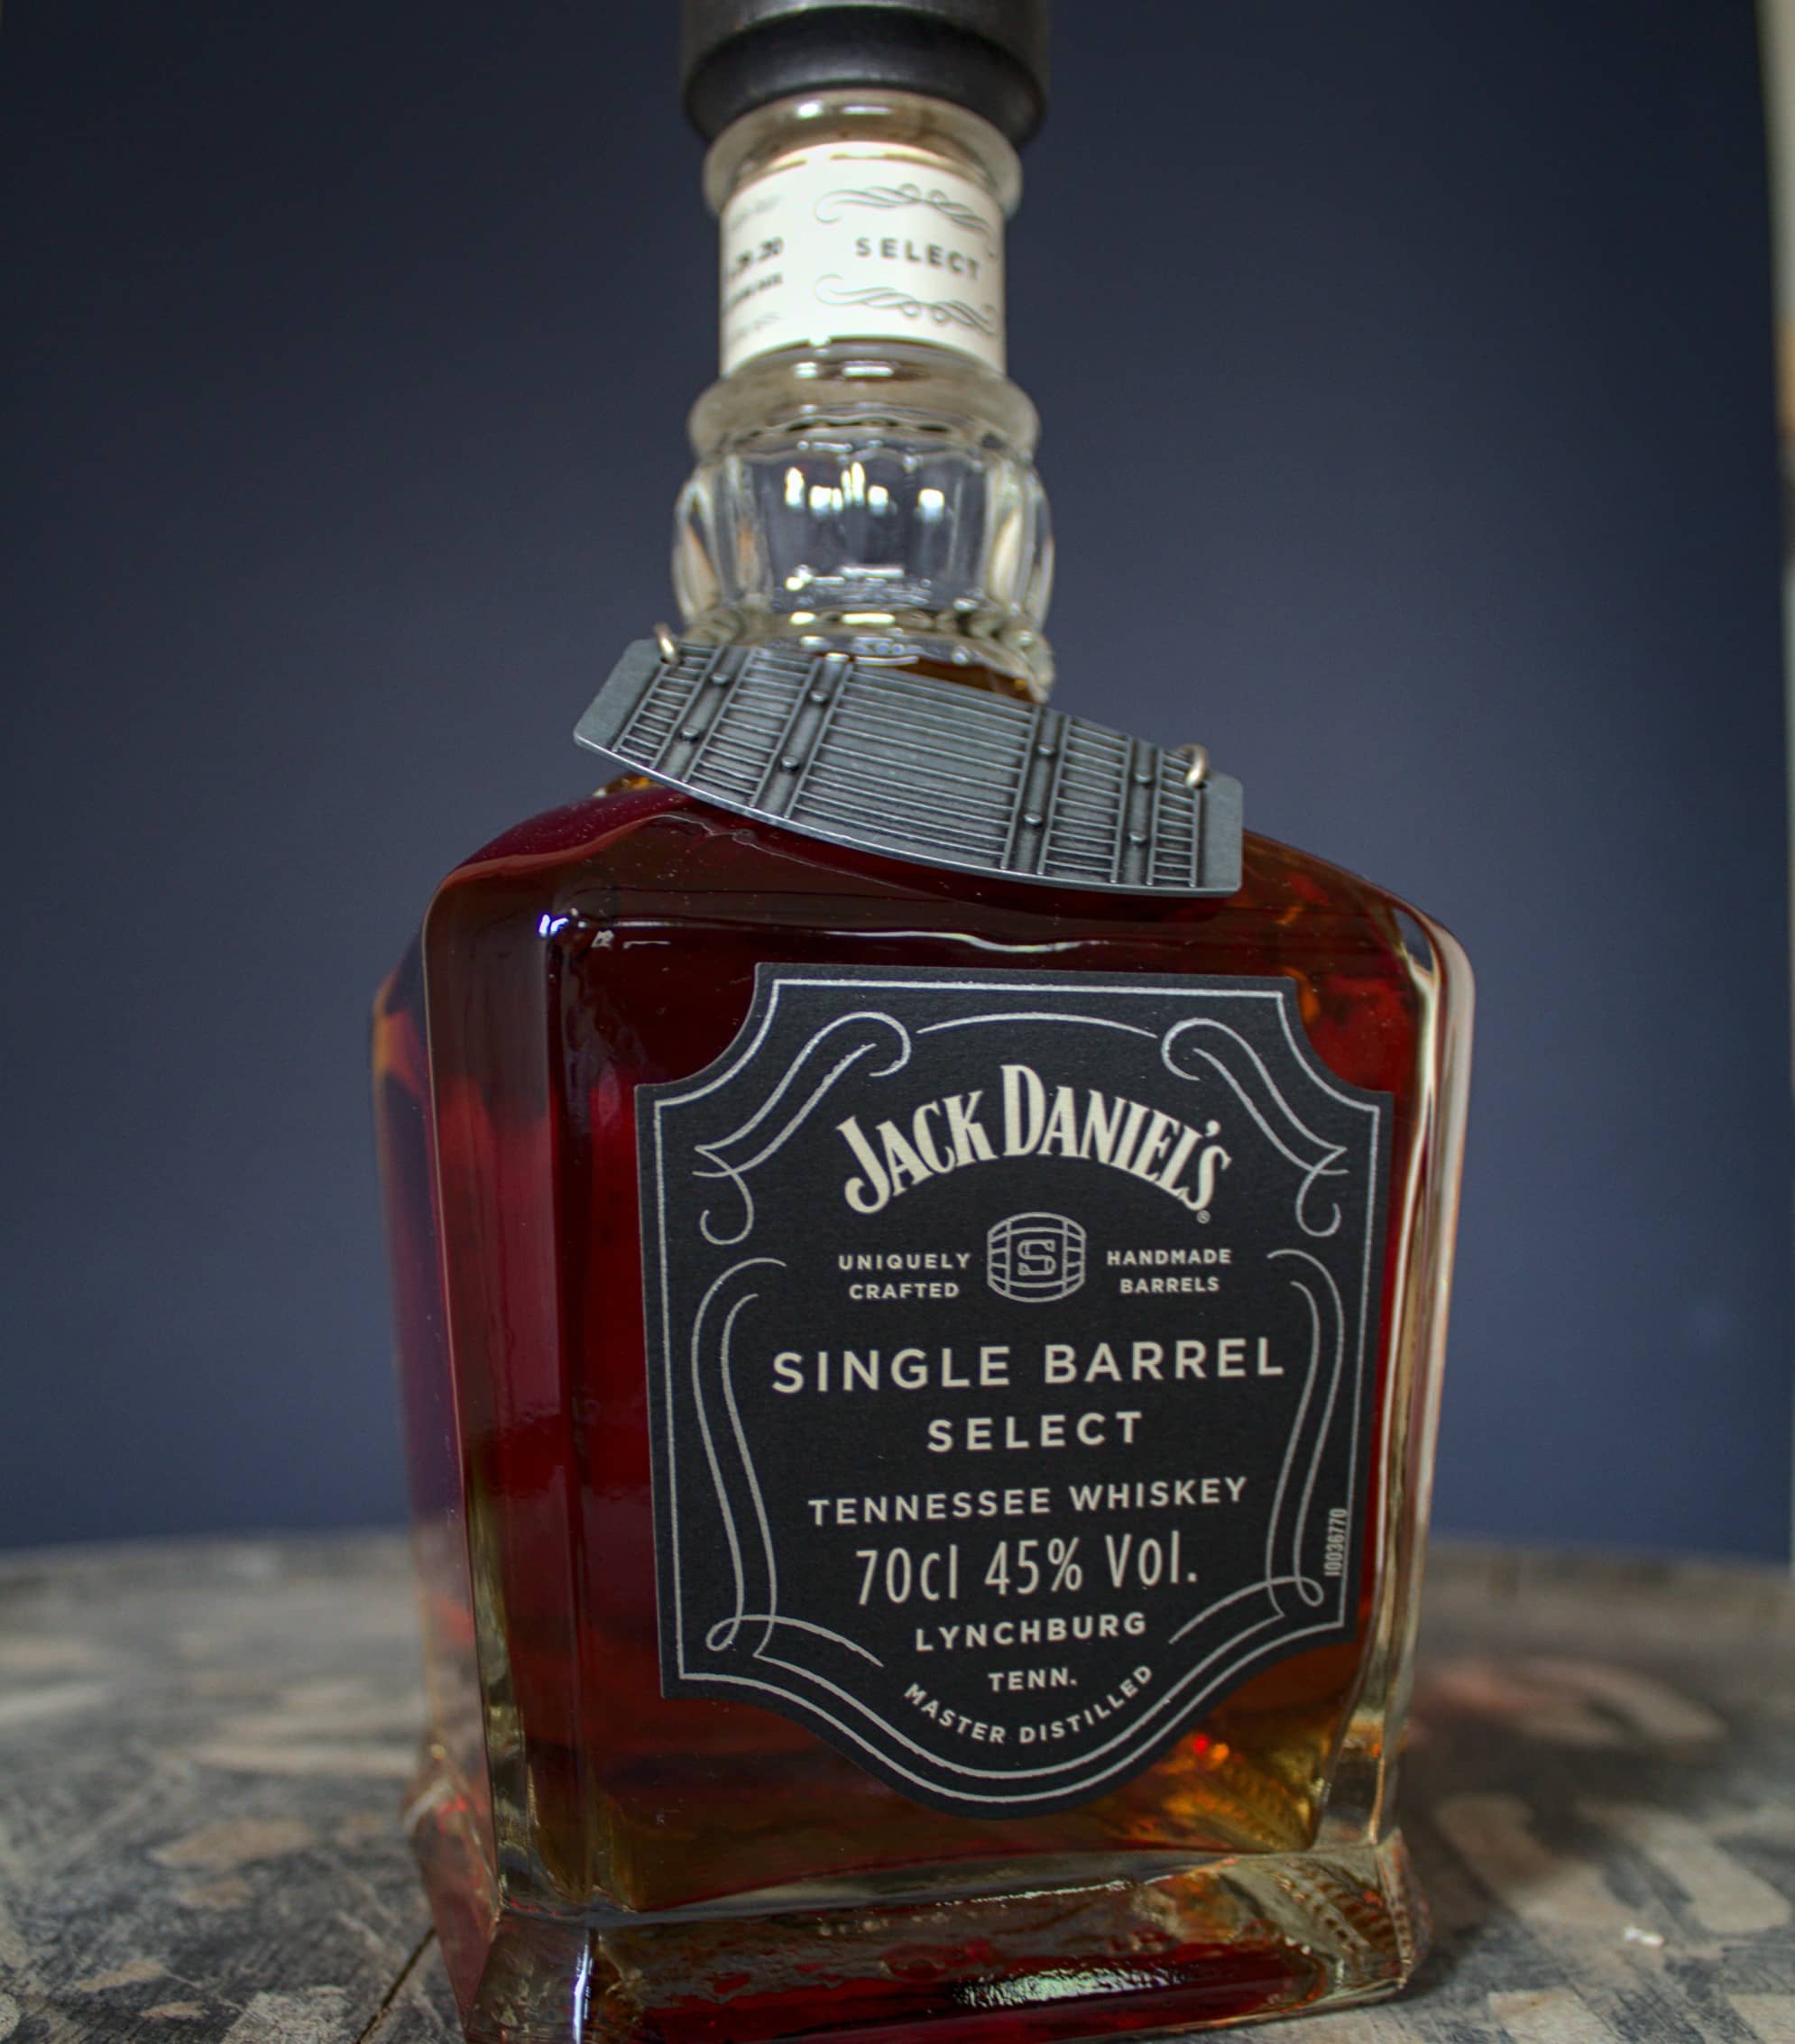 Bottle of Jack Daniels Single Barrel in a wooden surface